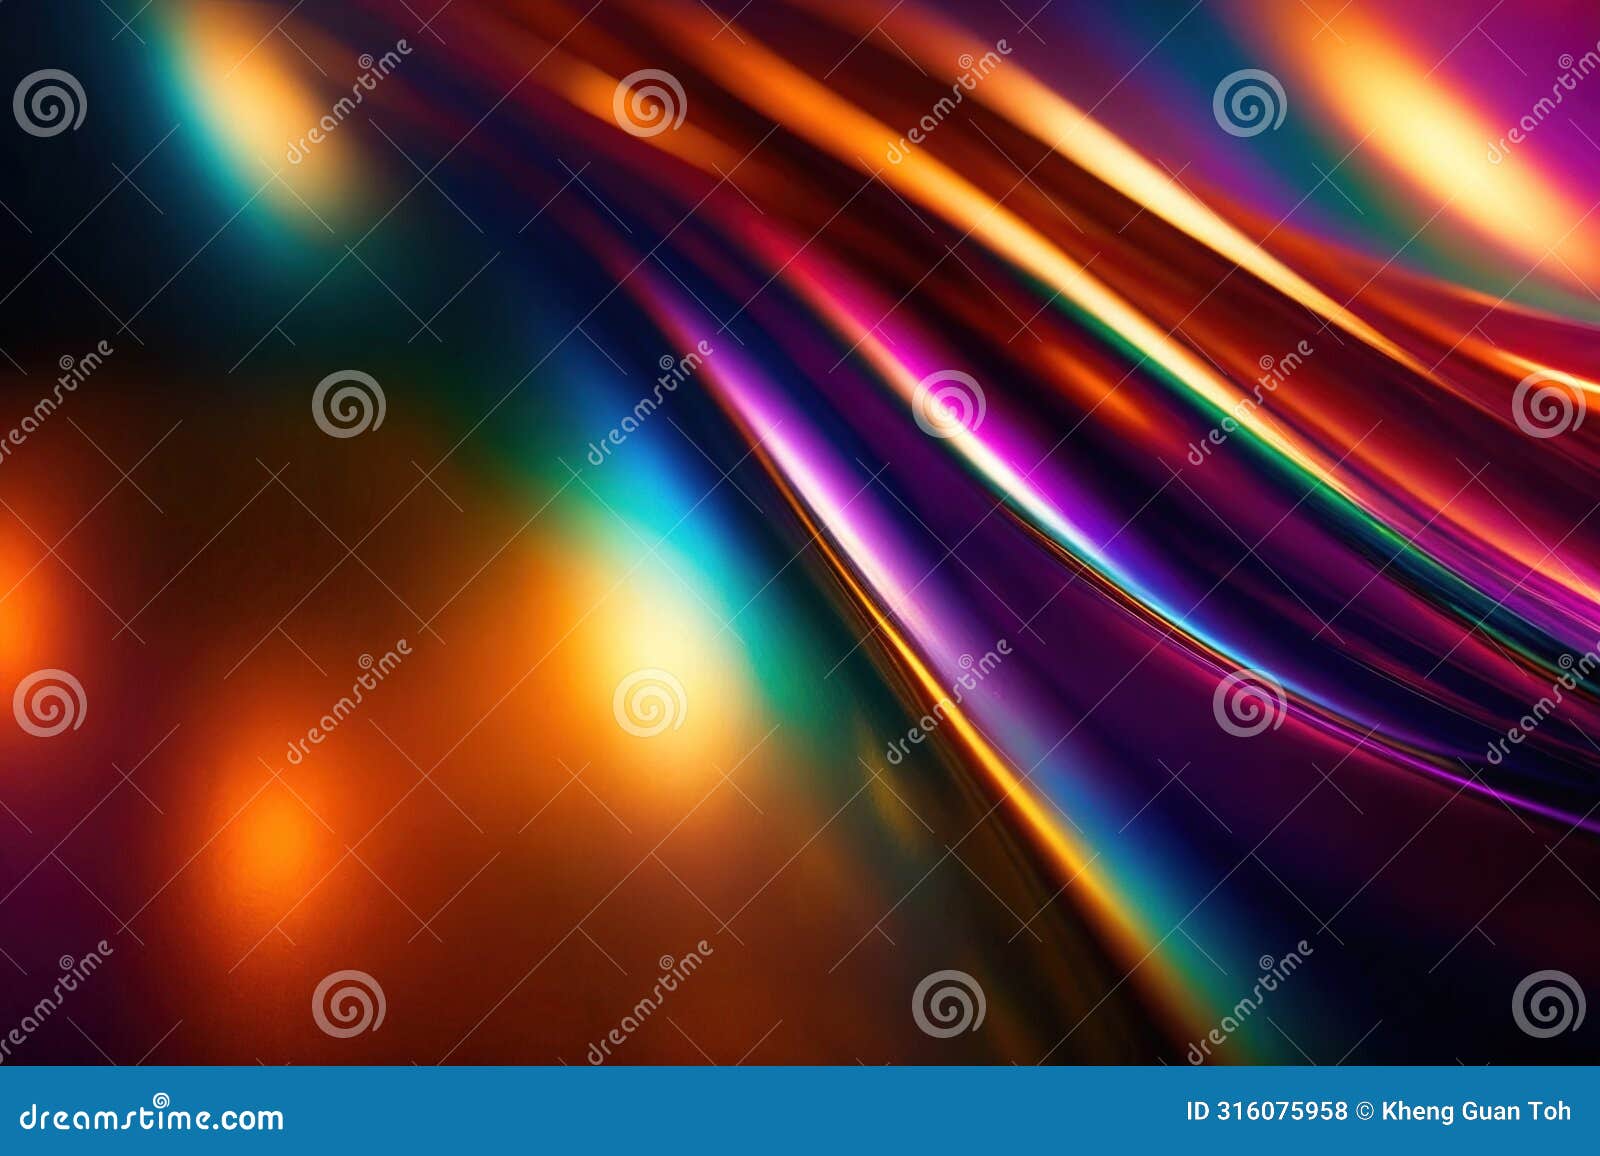 iridescent rainbow glitter sheen, abstract pattern wallpaper background texture